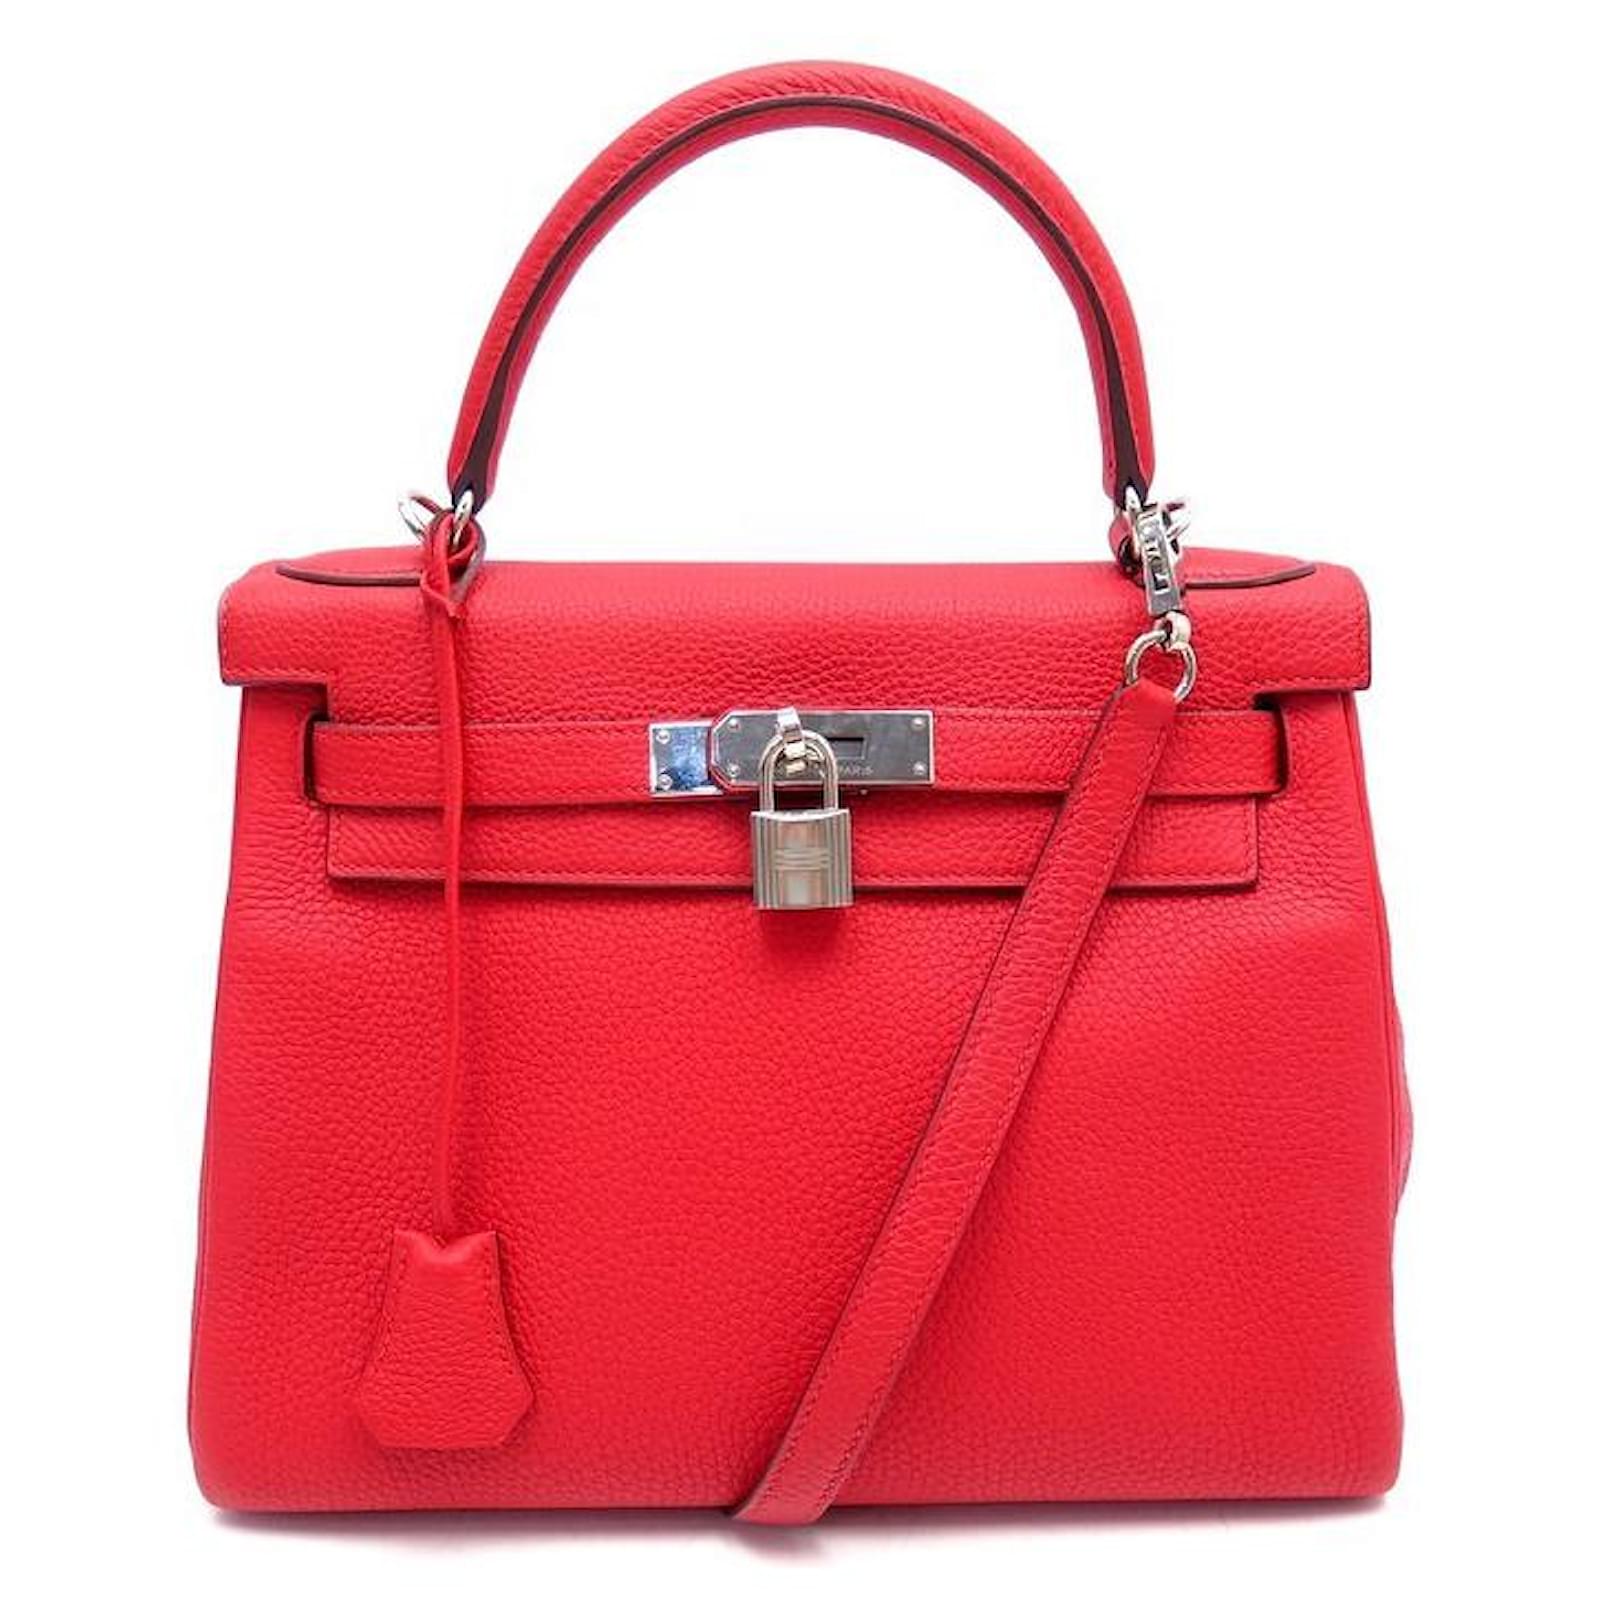 Handbags Hermès New Hermes Kelly Handbag 28 Return Leather Red Togo Leather Purse Shoulder Strap